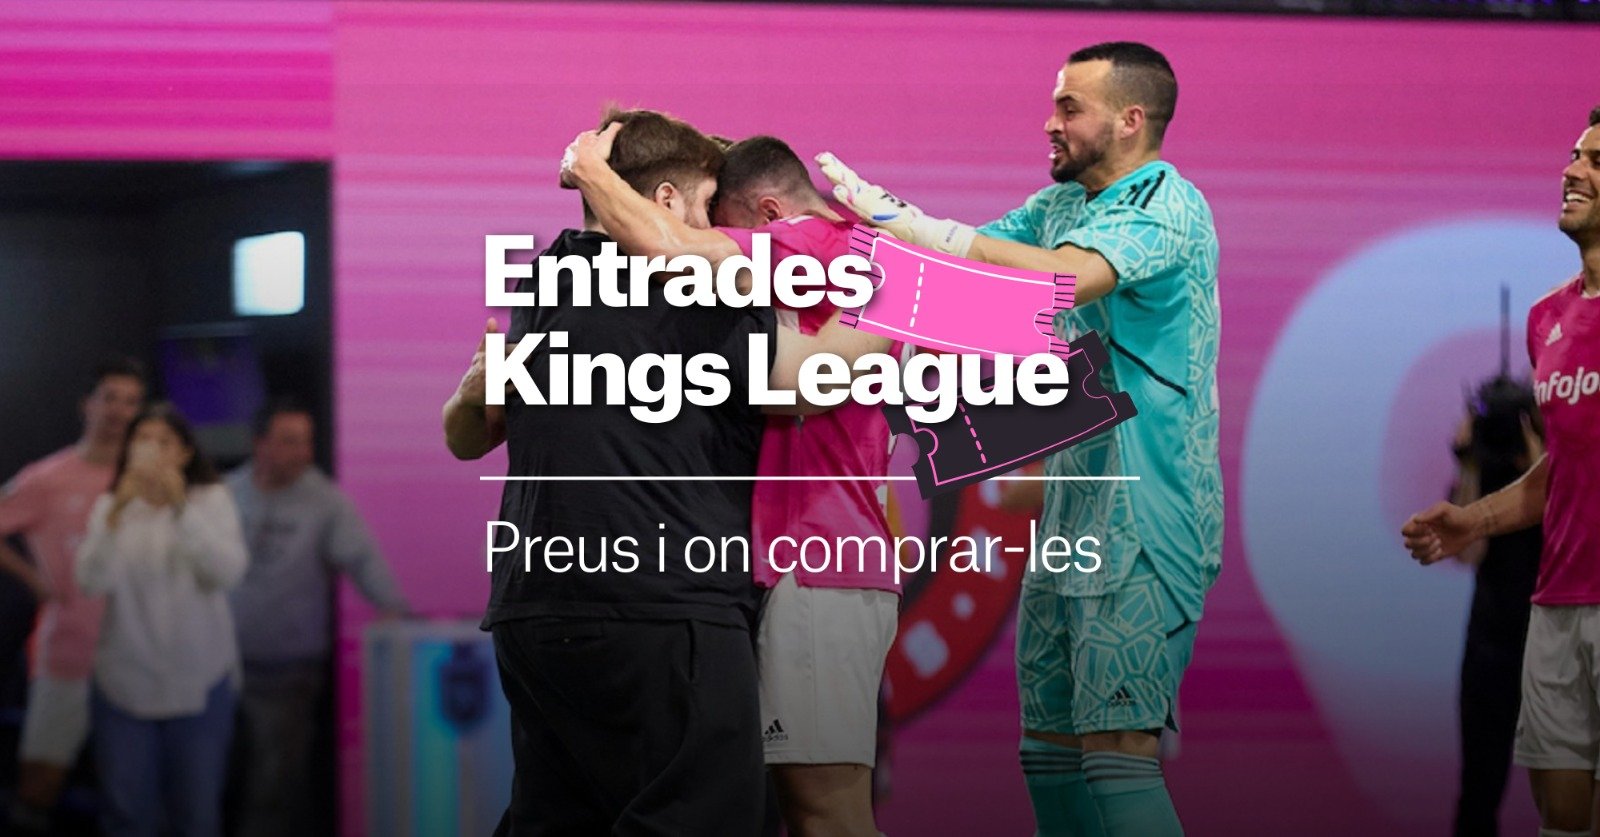 Entradas Final Four de la Kings League en el Camp Nou: precios y dónde comprar